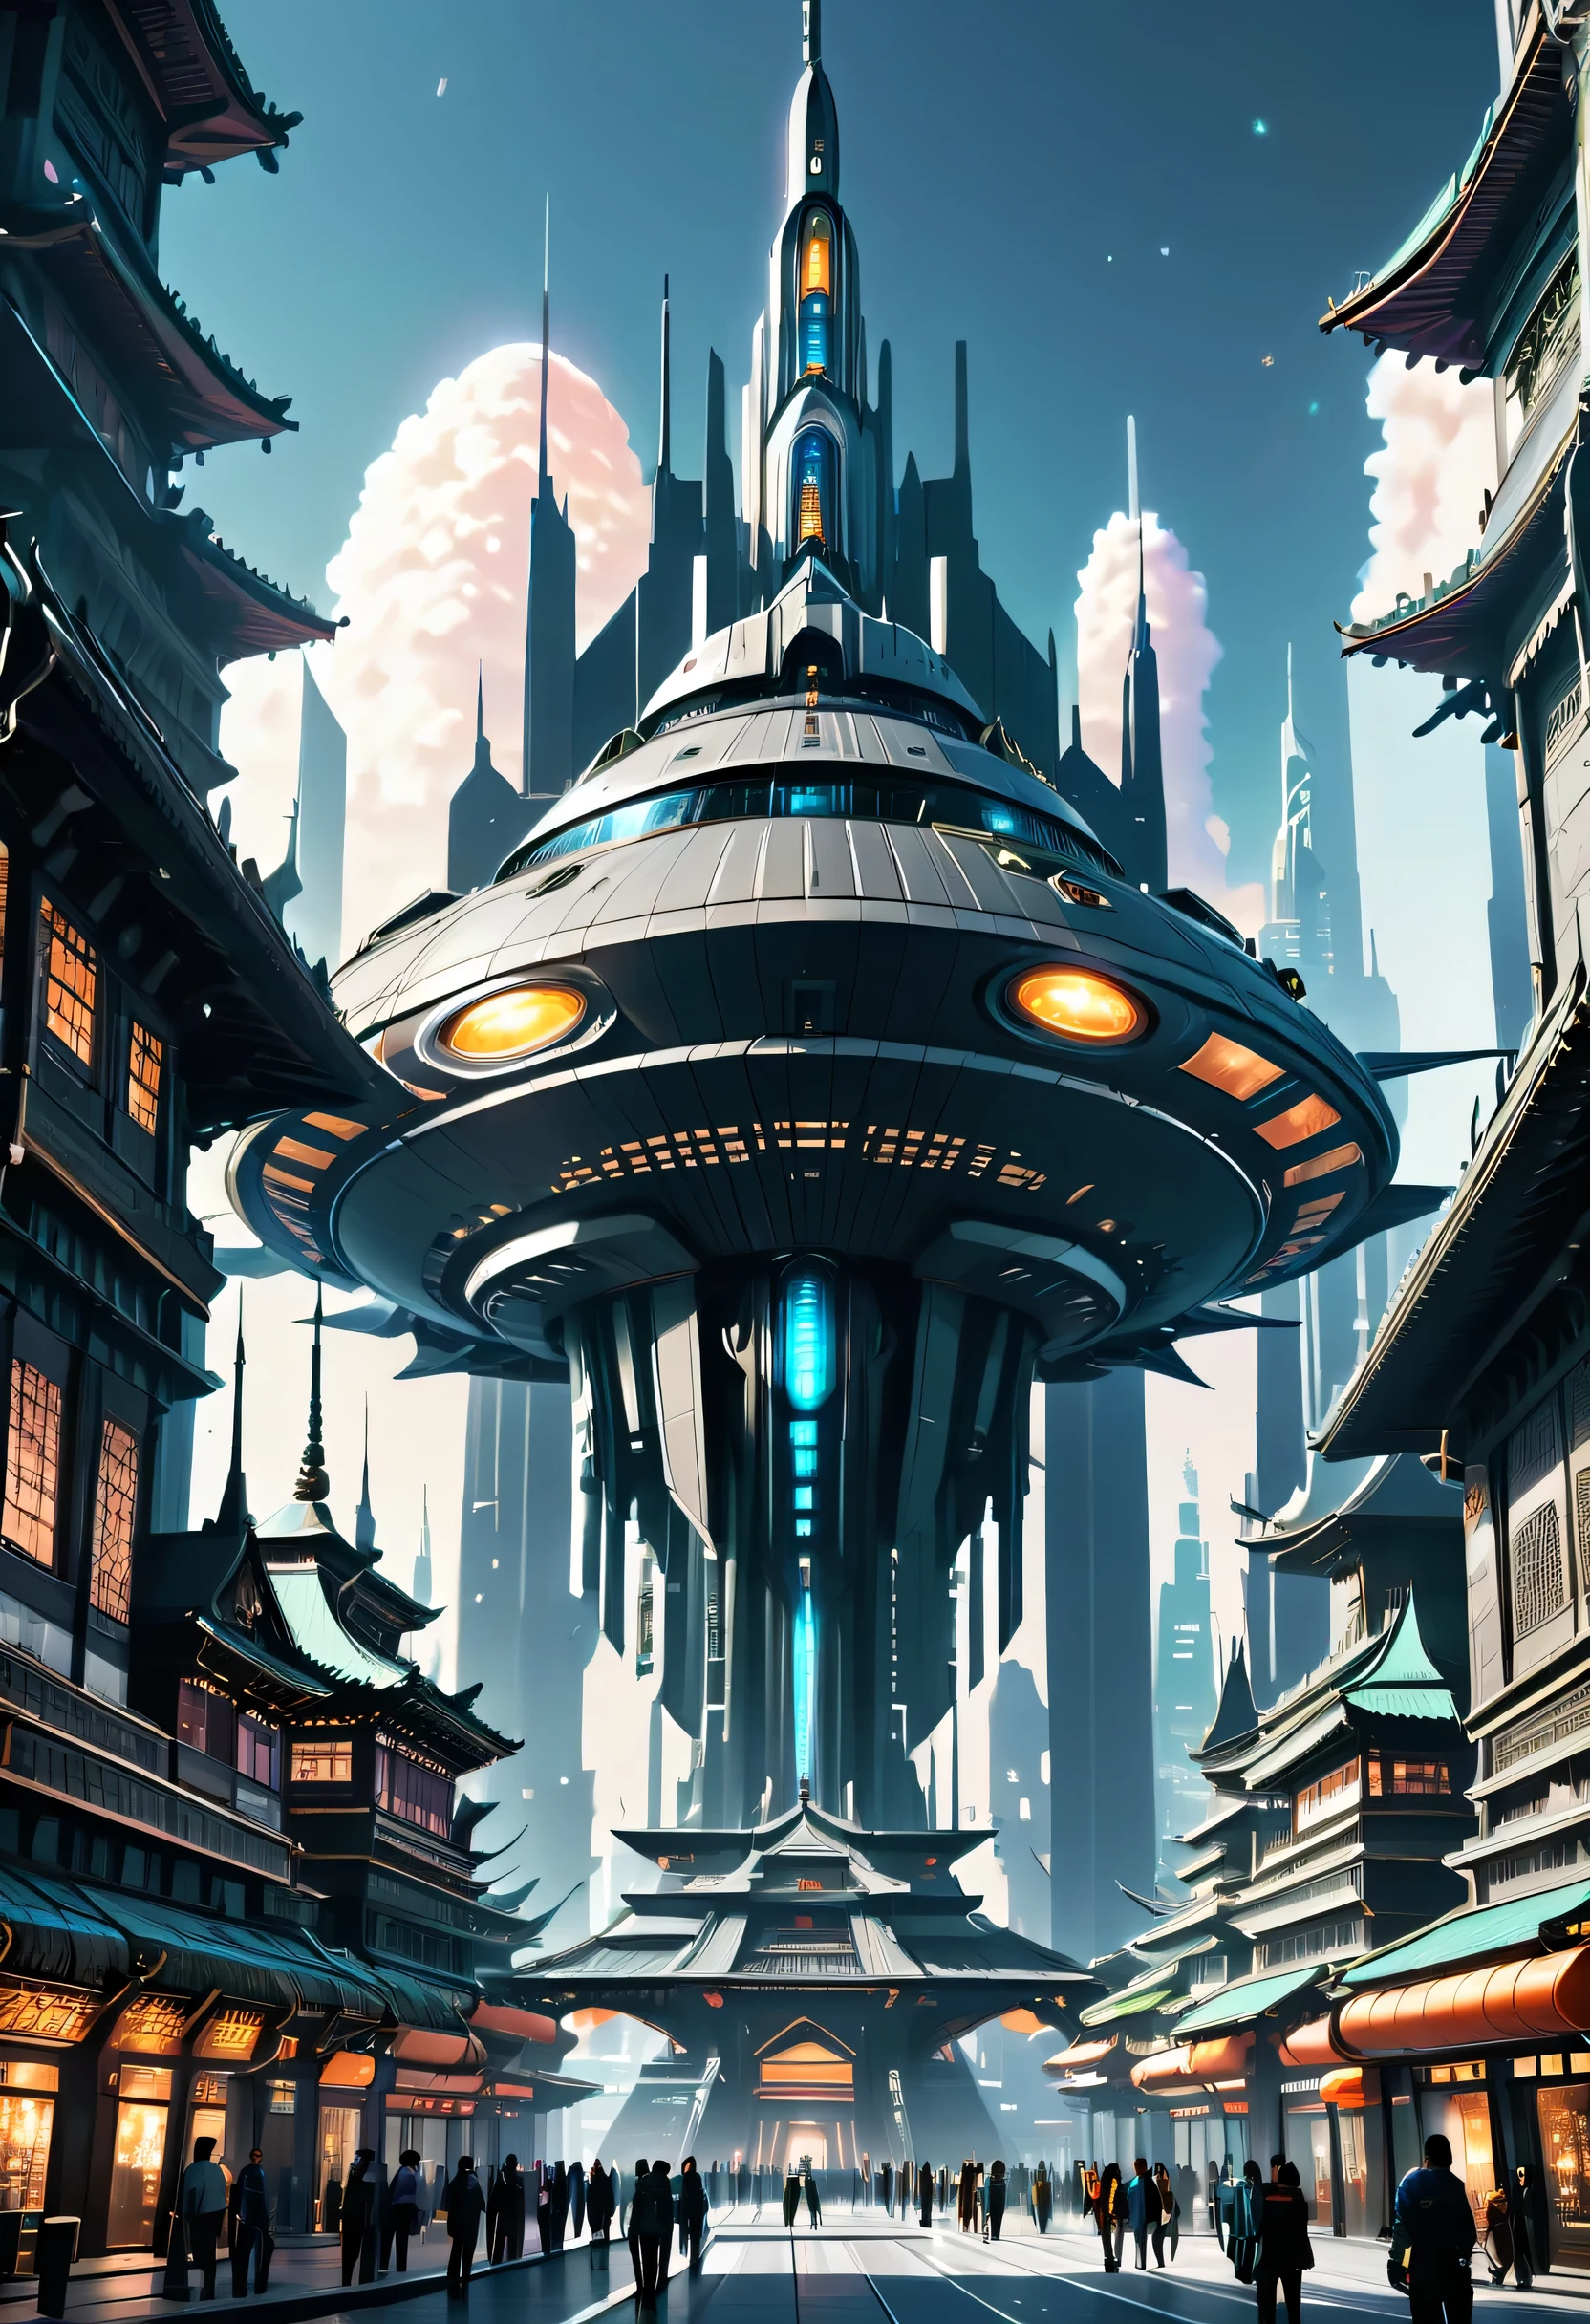 未来城市，一艘未来派宇宙飞船飞过它, 科幻幻想壁纸, 在幻想科幻城市, 格雷格·比普尔, 巨大的未来主义寺庙城市, 科幻幻想桌面壁纸, 美丽的未来之城, 科幻城市, 科幻城市, 至高城, 超凡脱俗的未来城市, 惊人的壁纸, 科幻世界